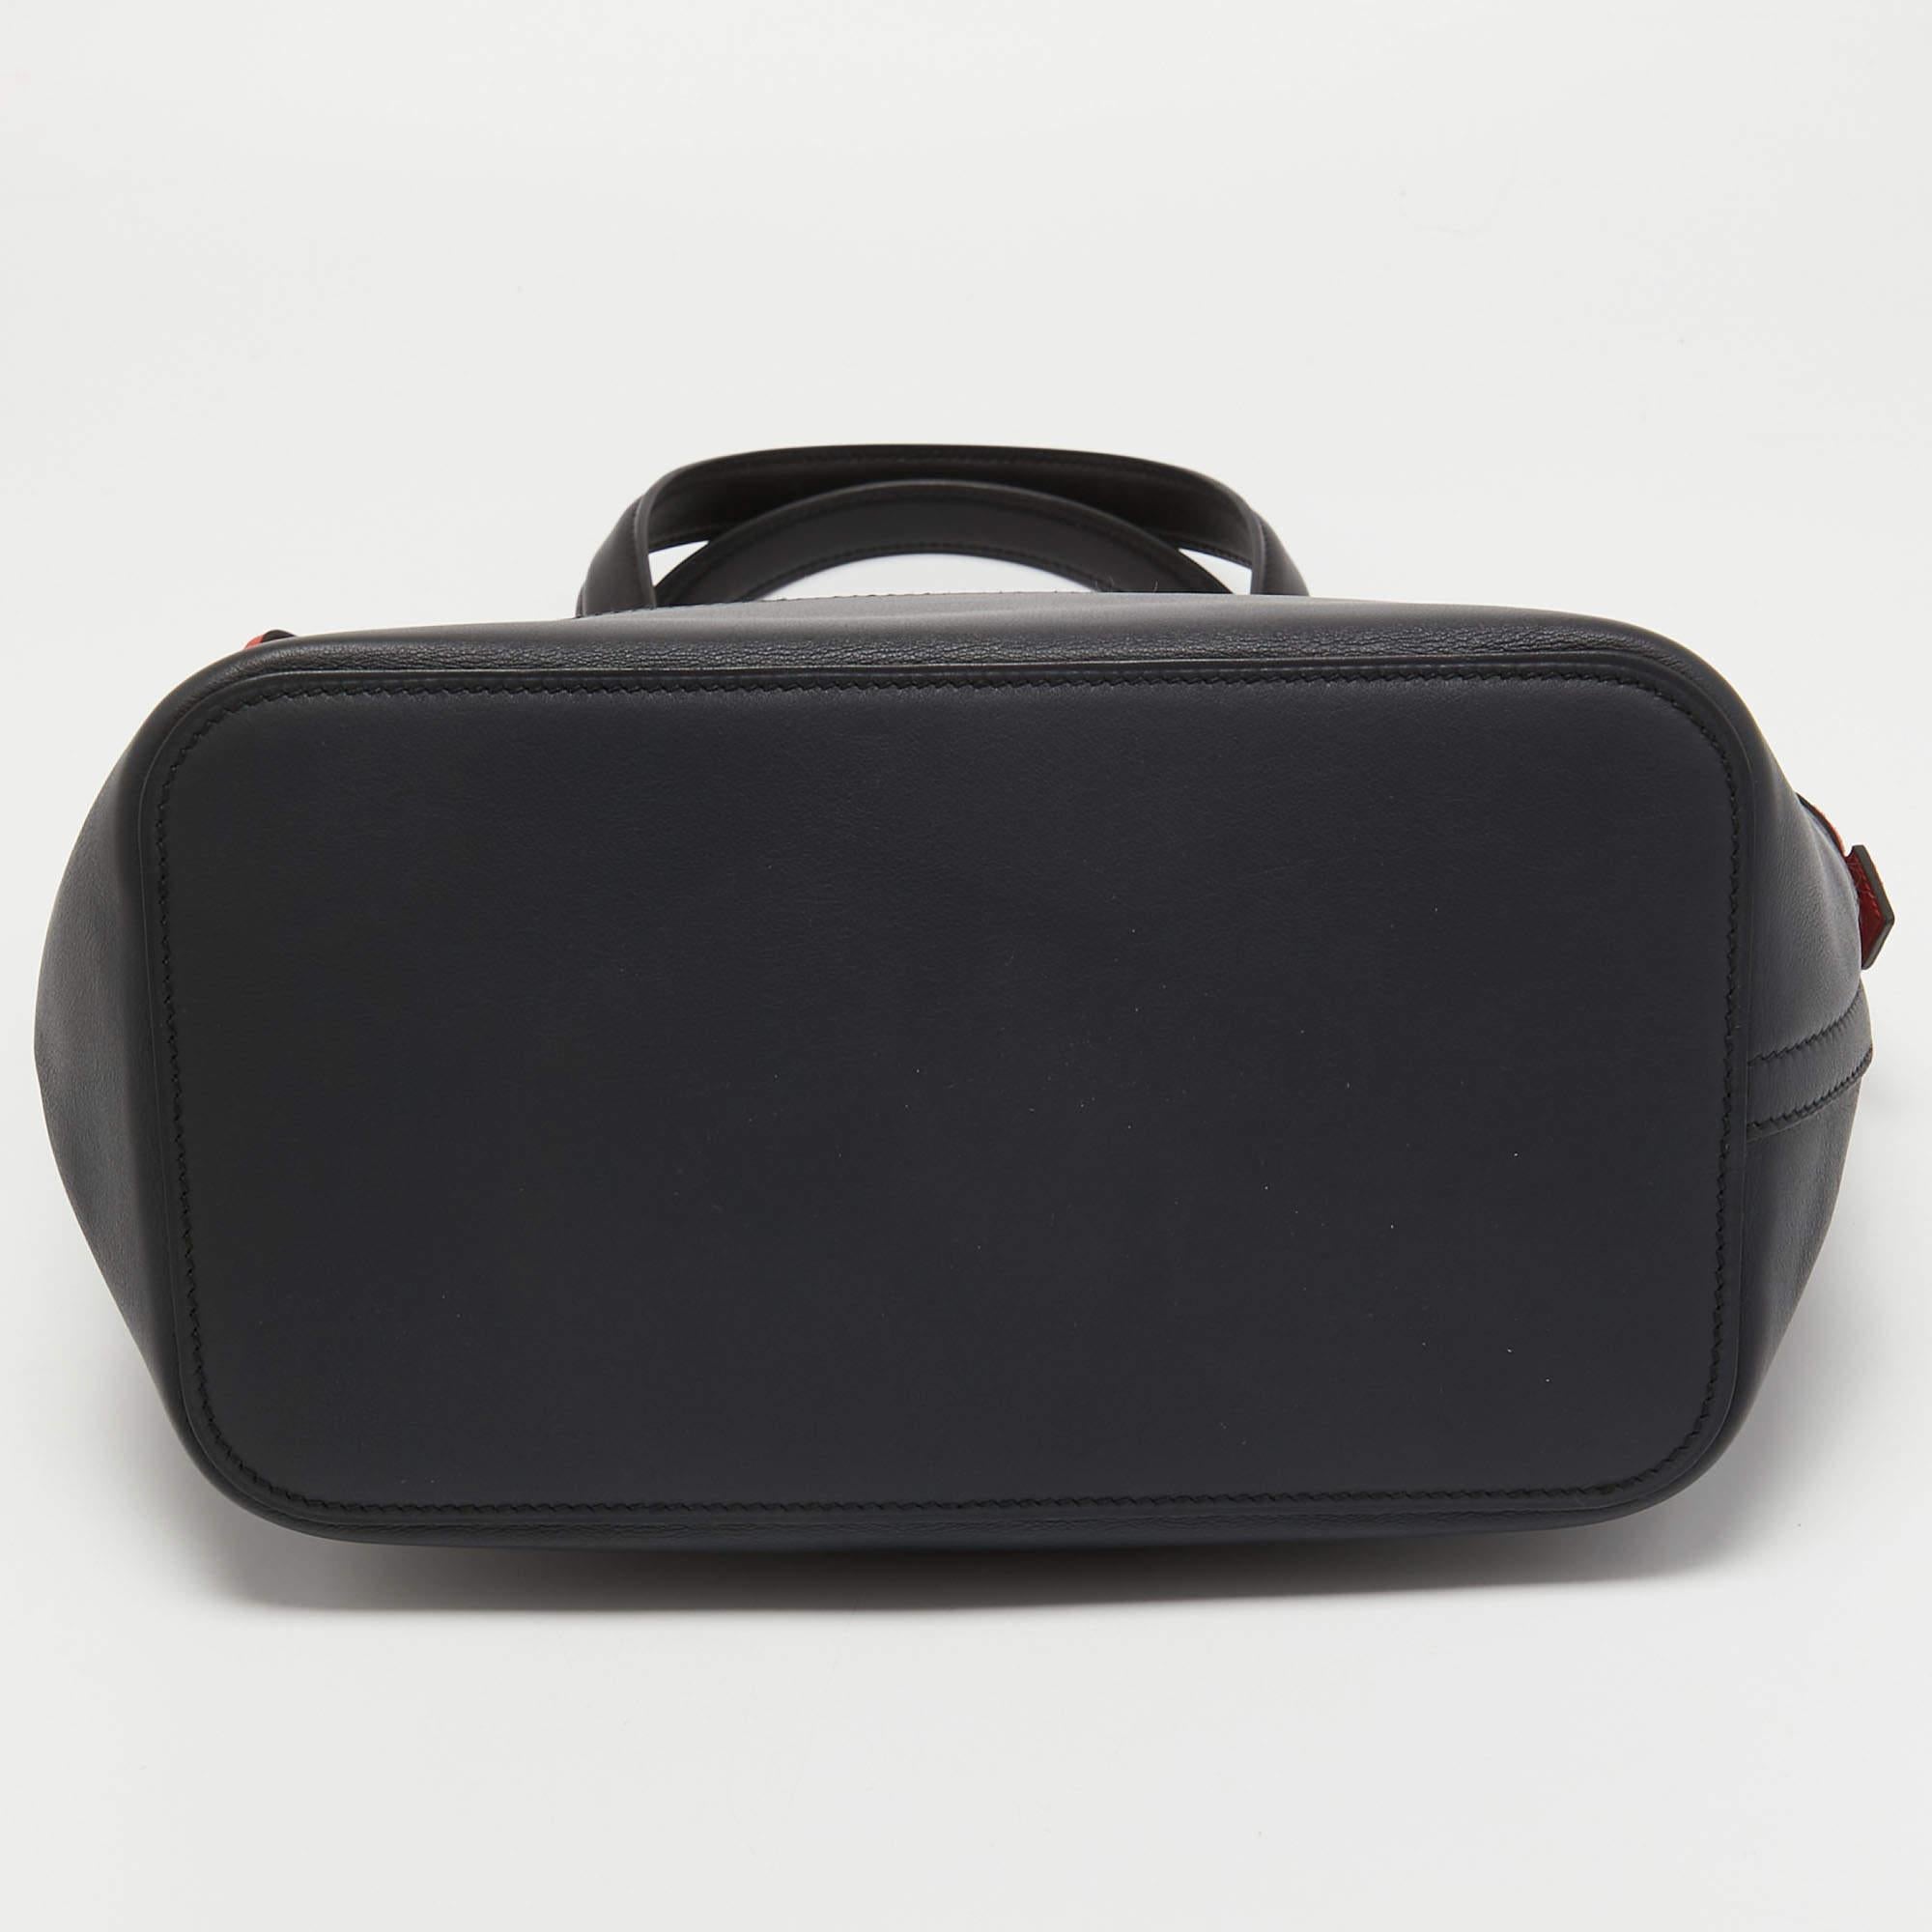 Hermes Black/Bleu Nuit/Rouge Evercolor and Swift Leather Transat Sailor Bag For Sale 1